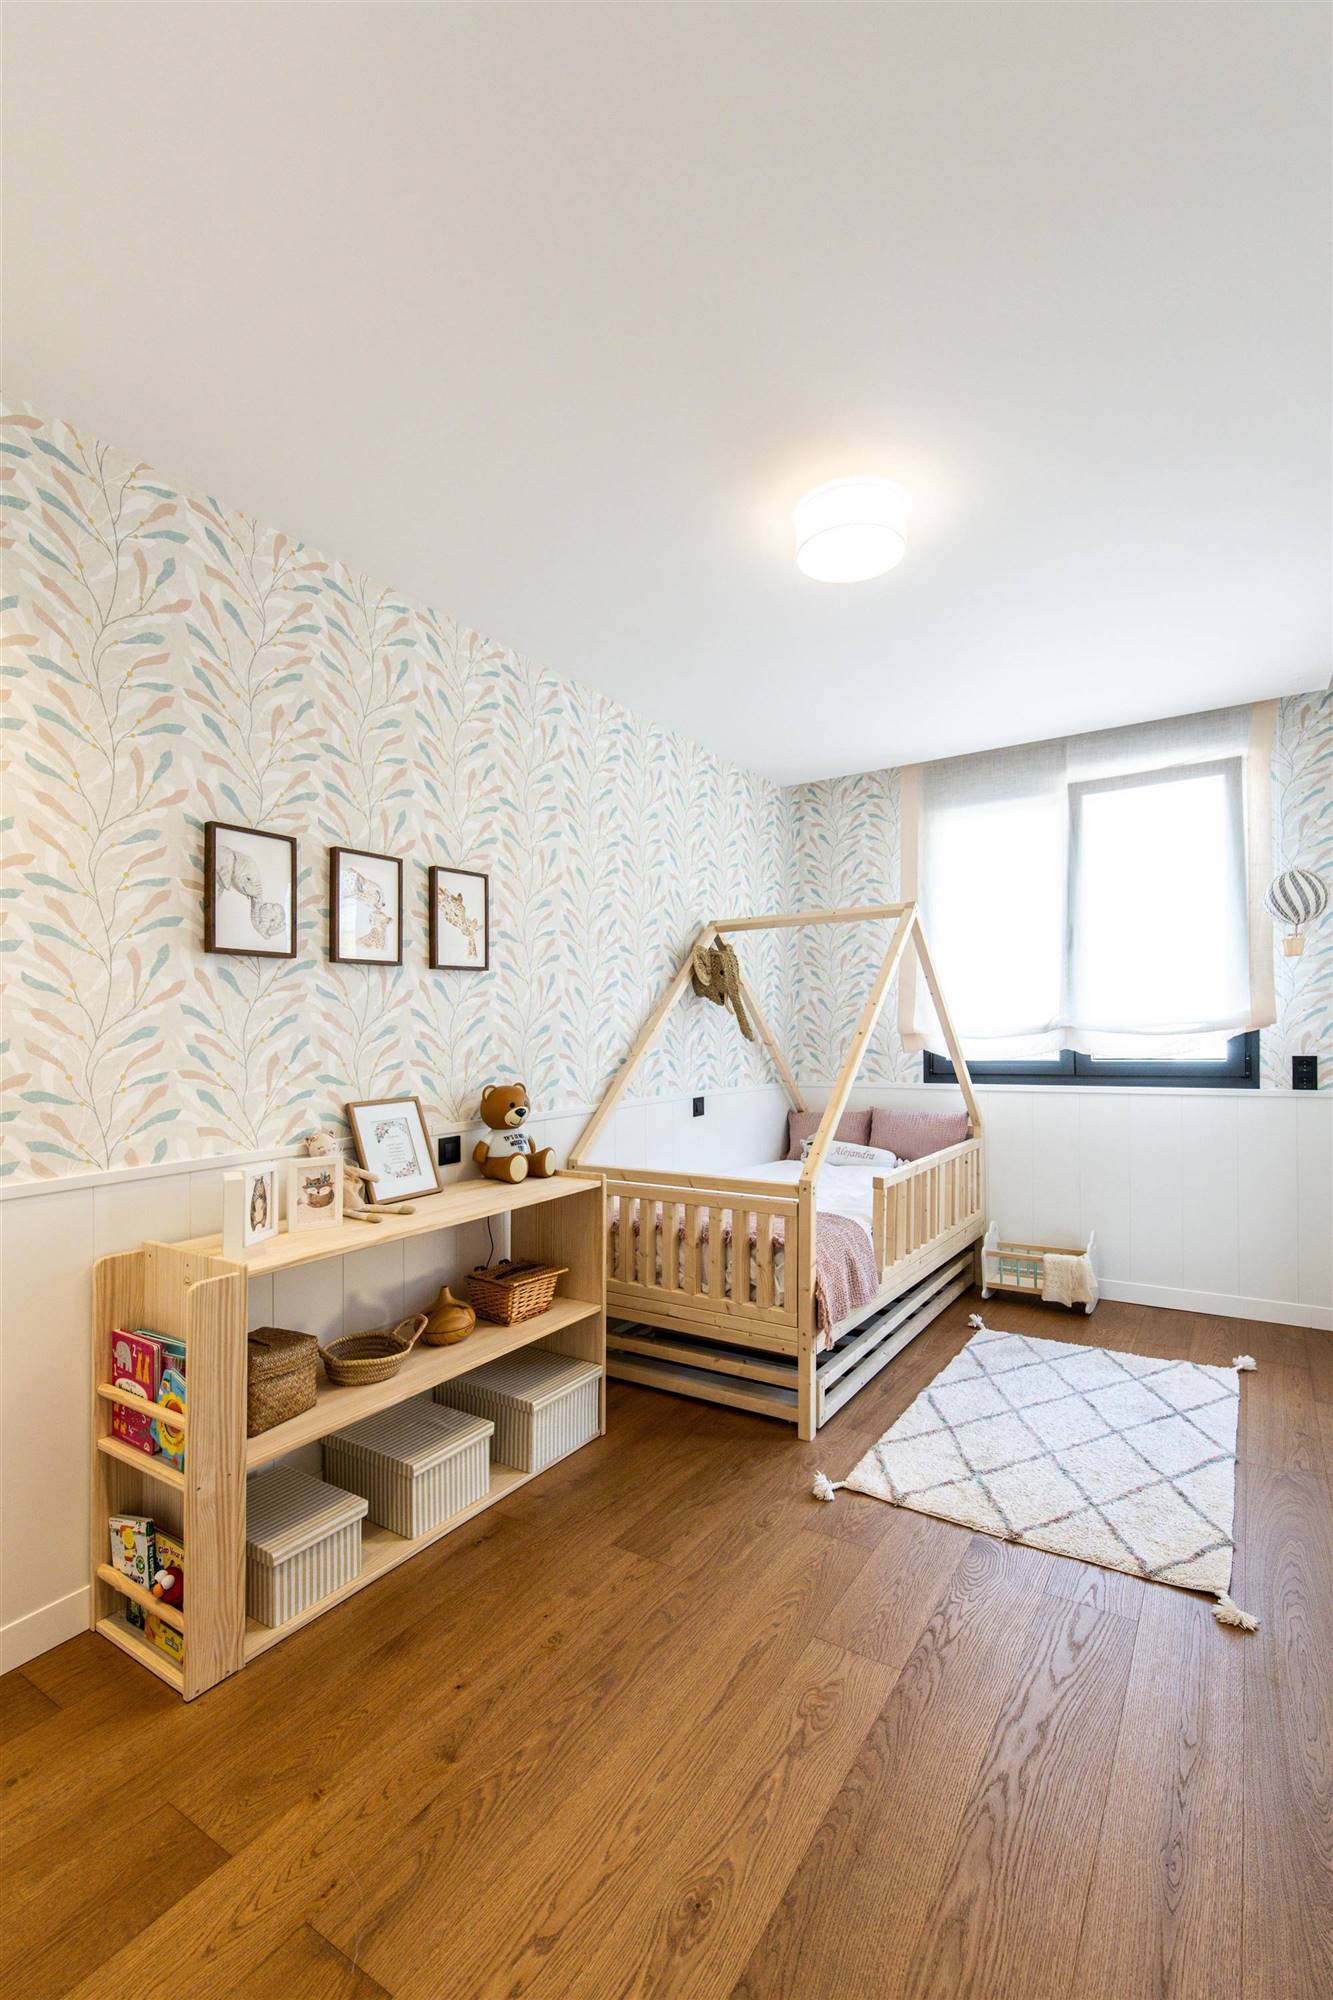 Habitación infantil de una vivienda unifamiliar en la calle Arturo Soria de Madrid, un proyecto del estudio de interiorismo WINK GROUP.